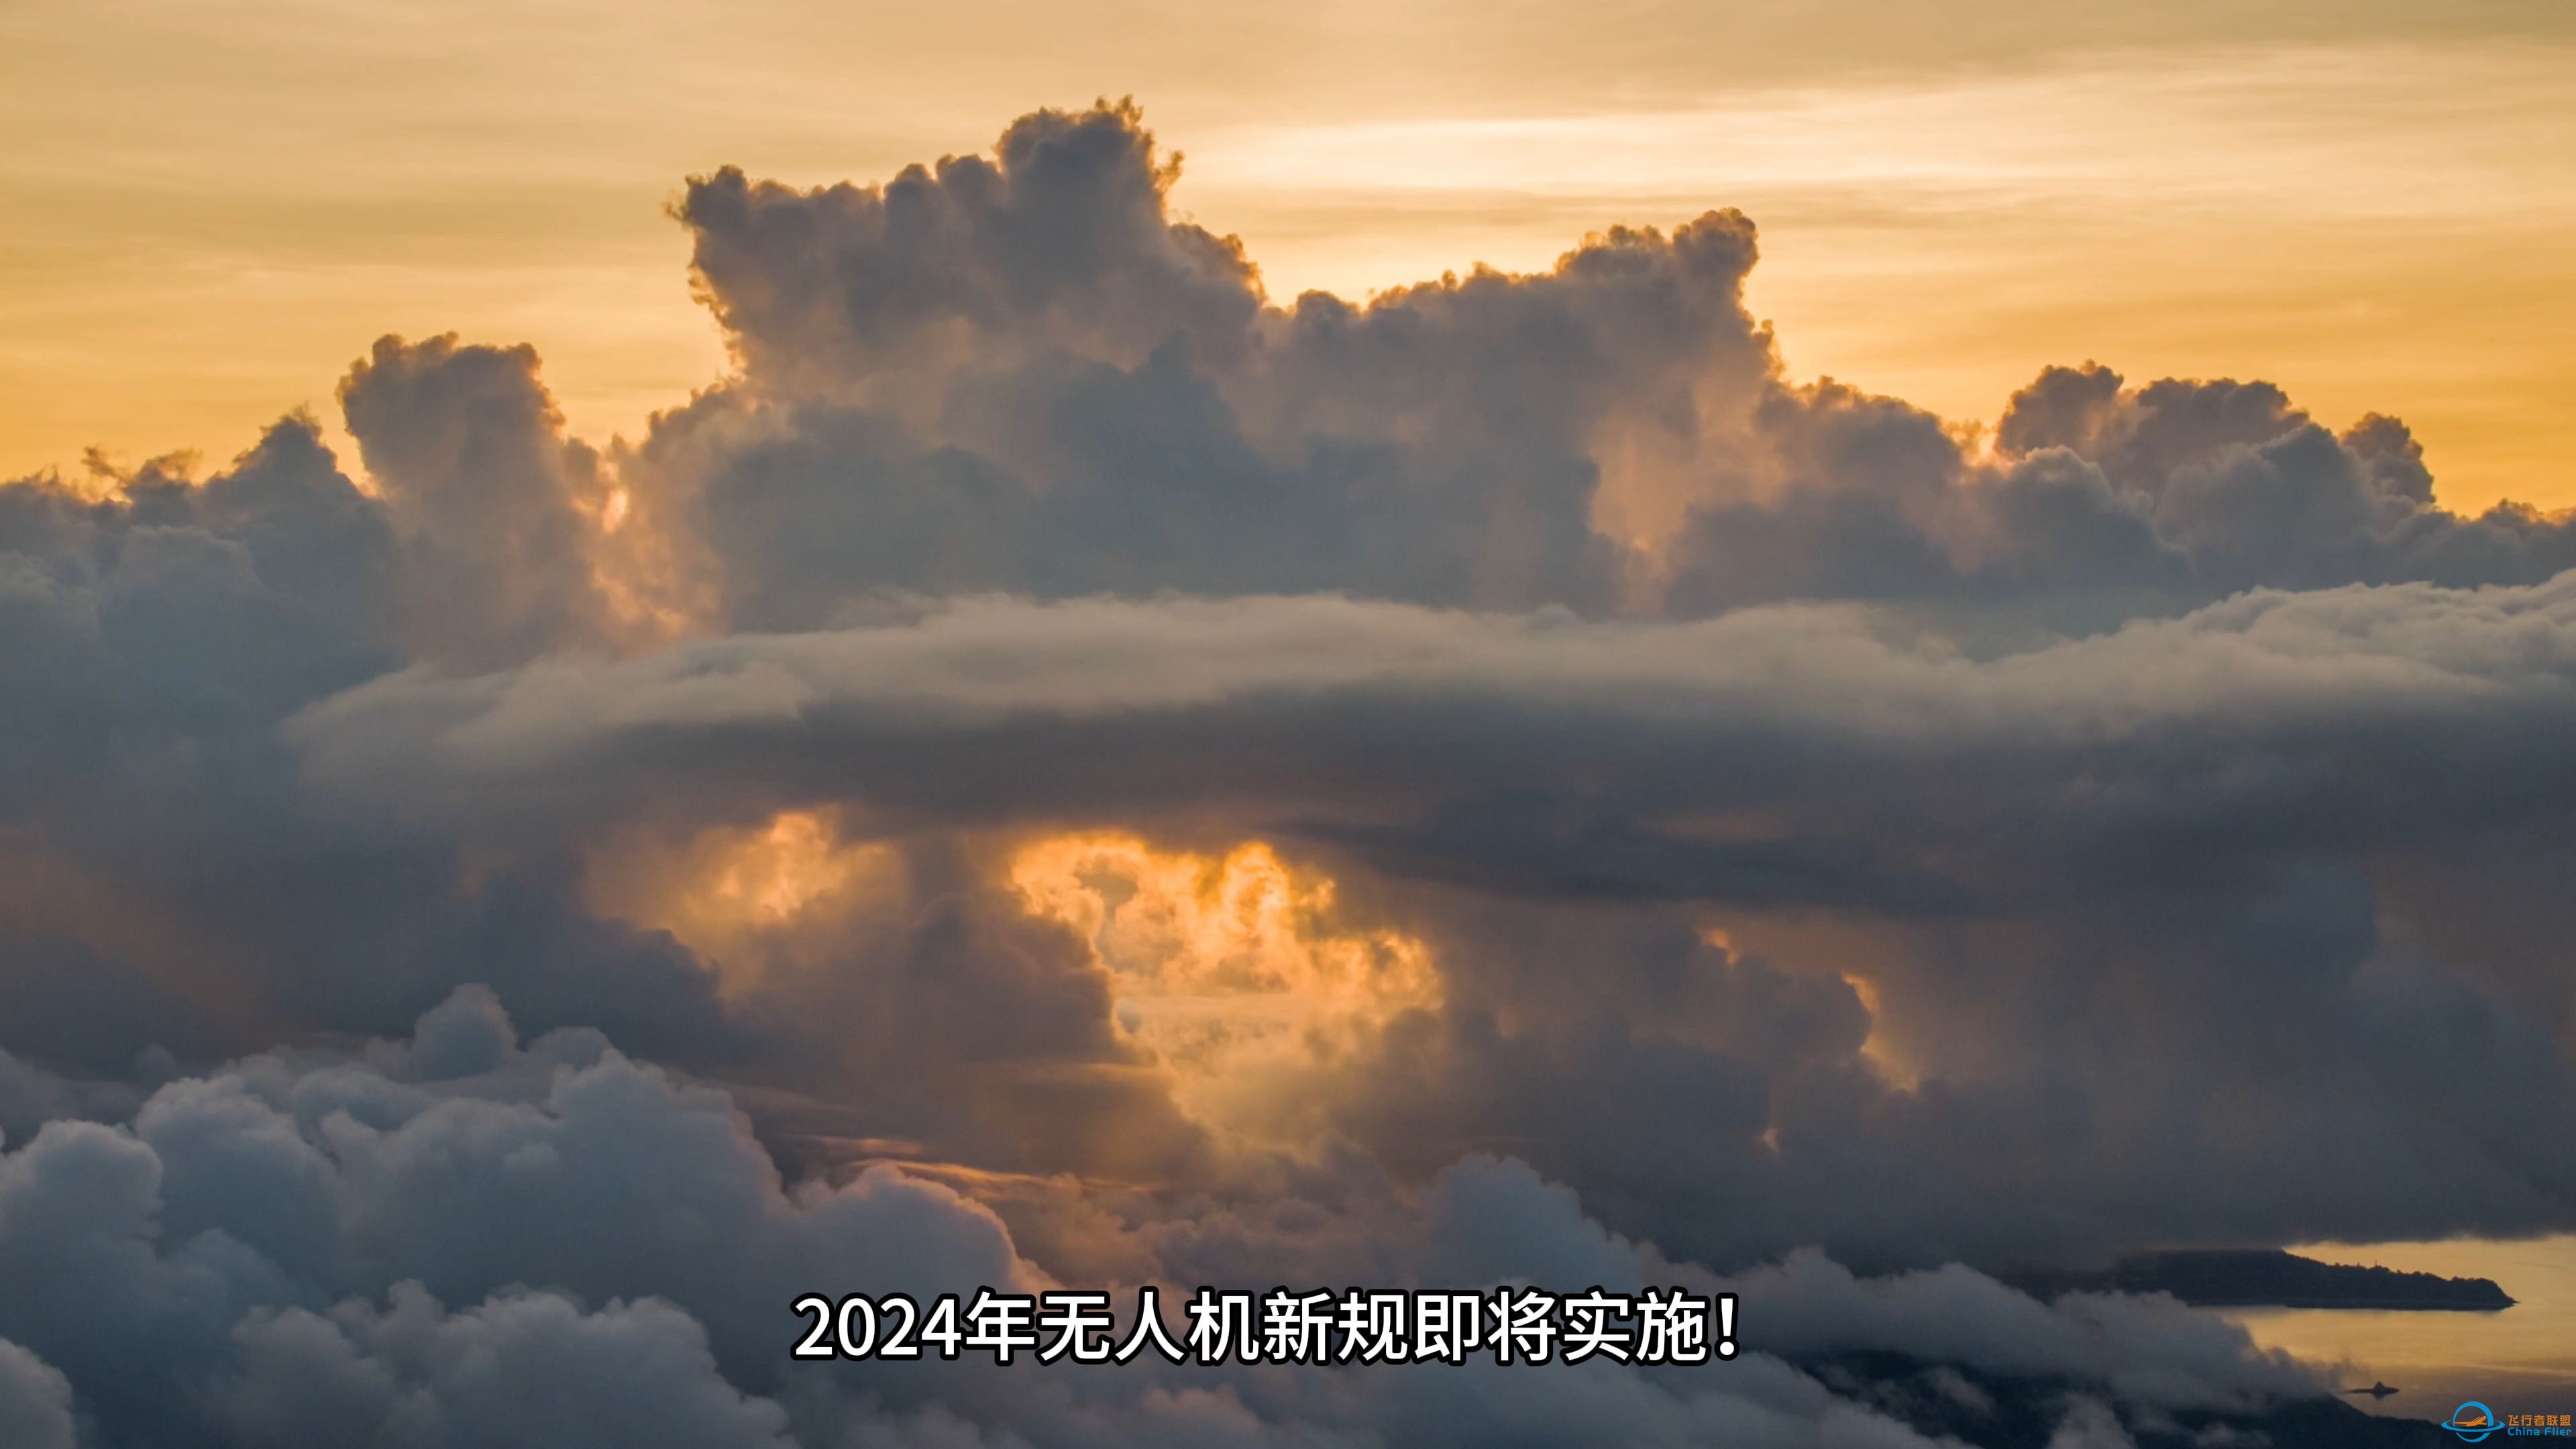 2024无人机新规生效,再见了500米,过几天就不能穿云了,趁现在能飞就飞吧-1.jpg